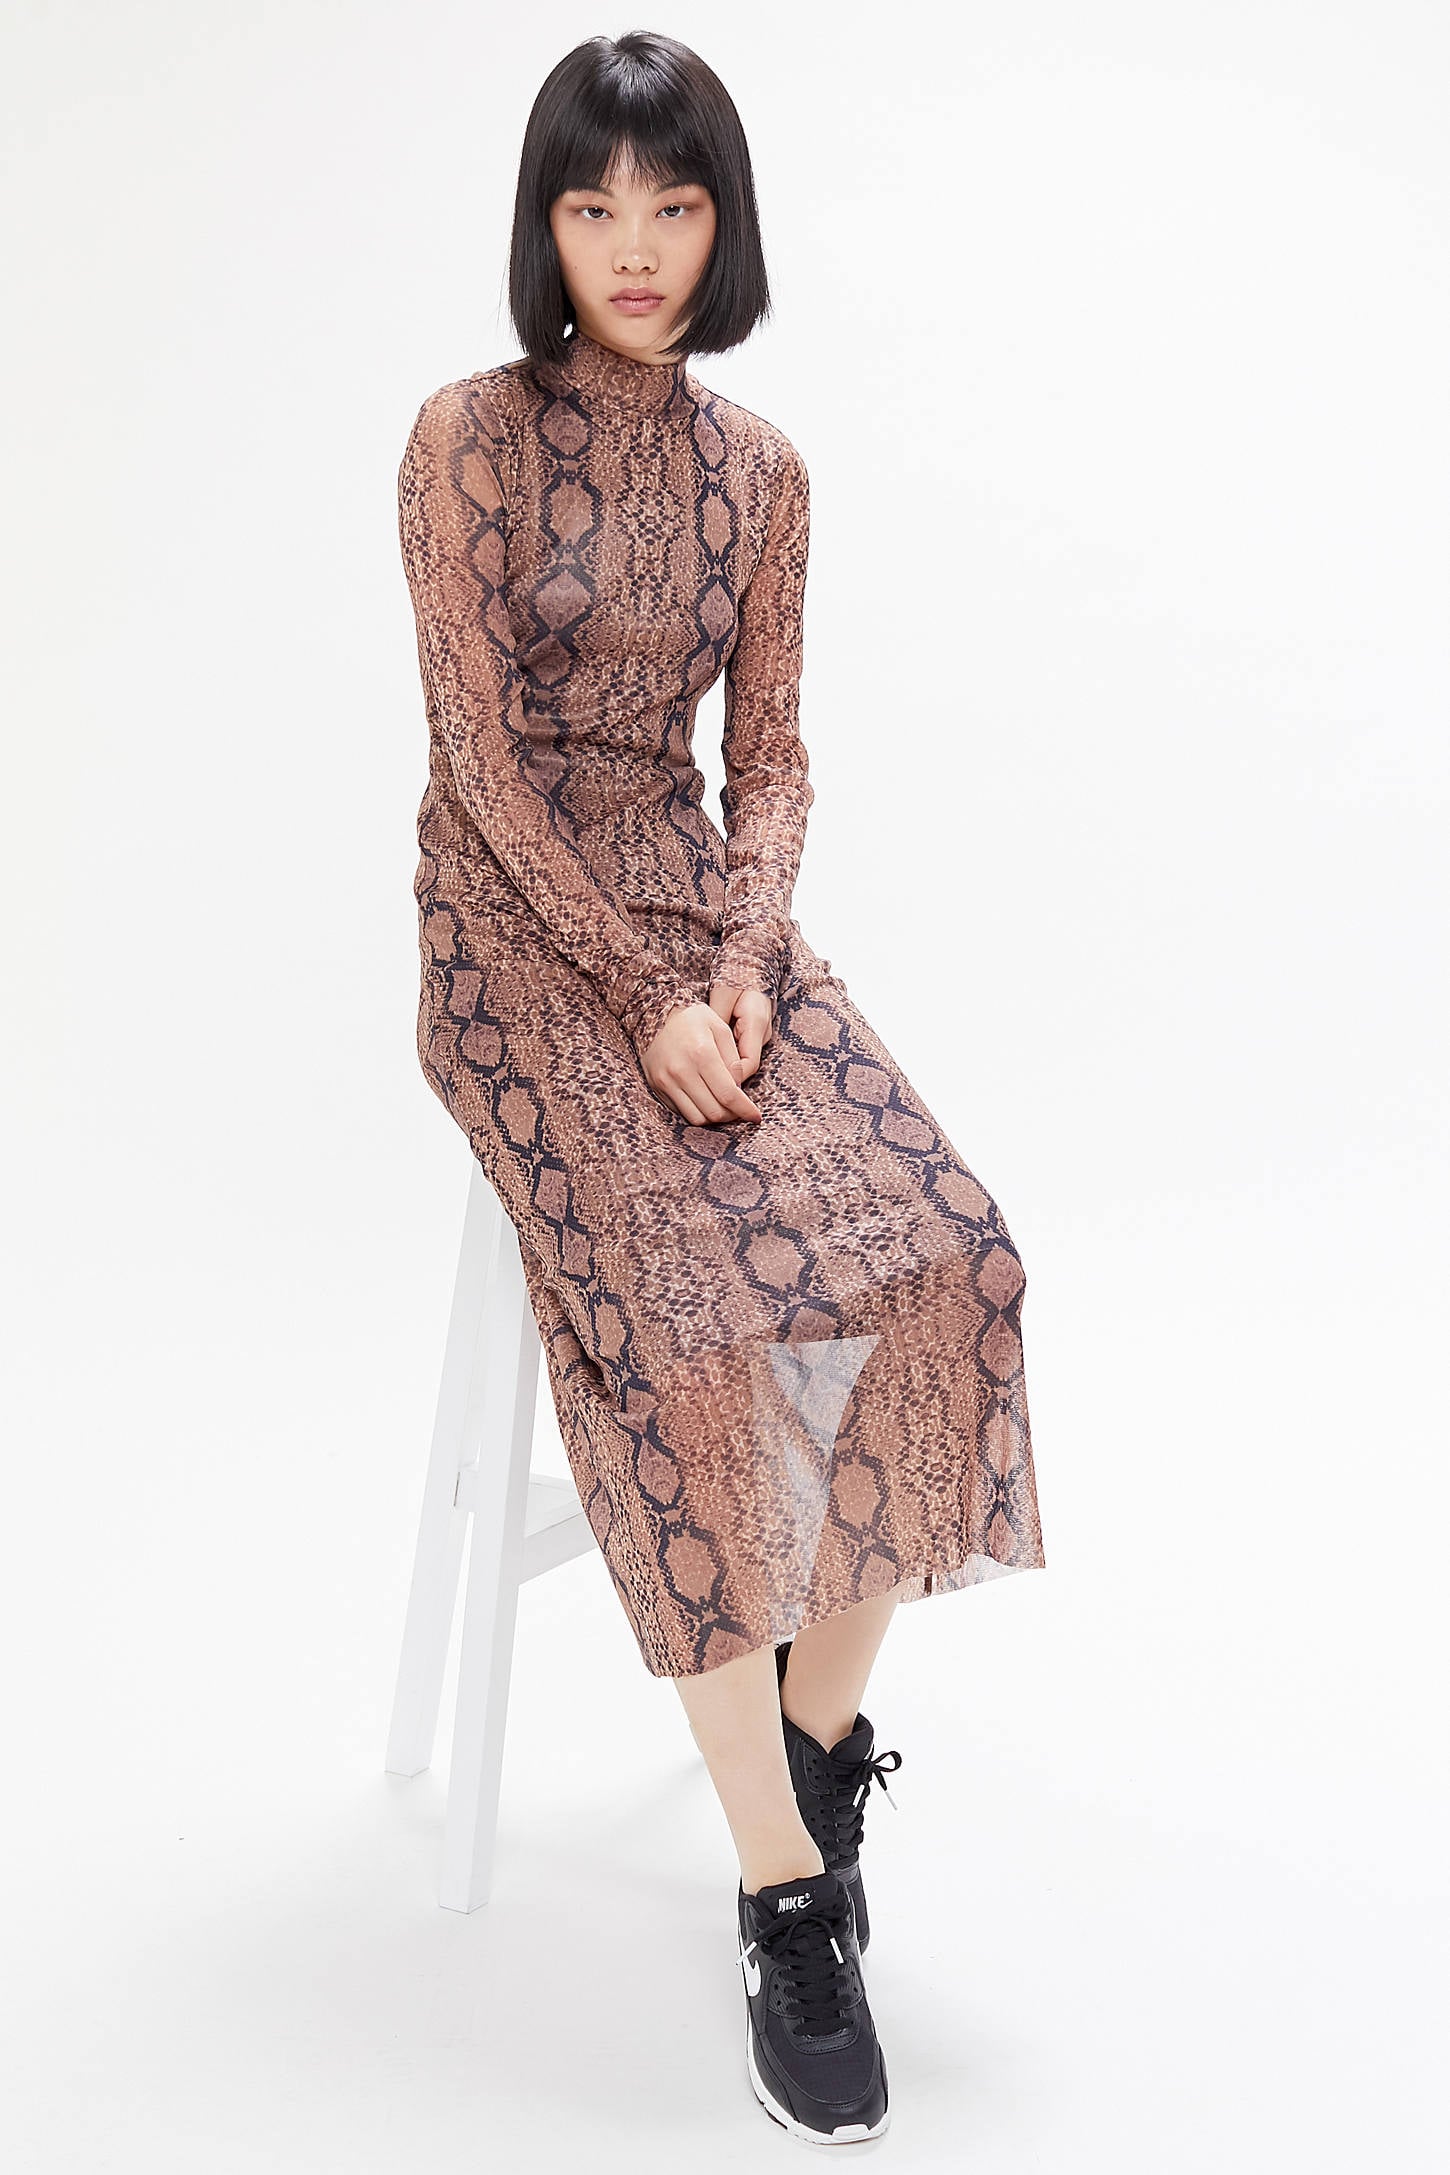 ganni leopard print mesh maxi dress